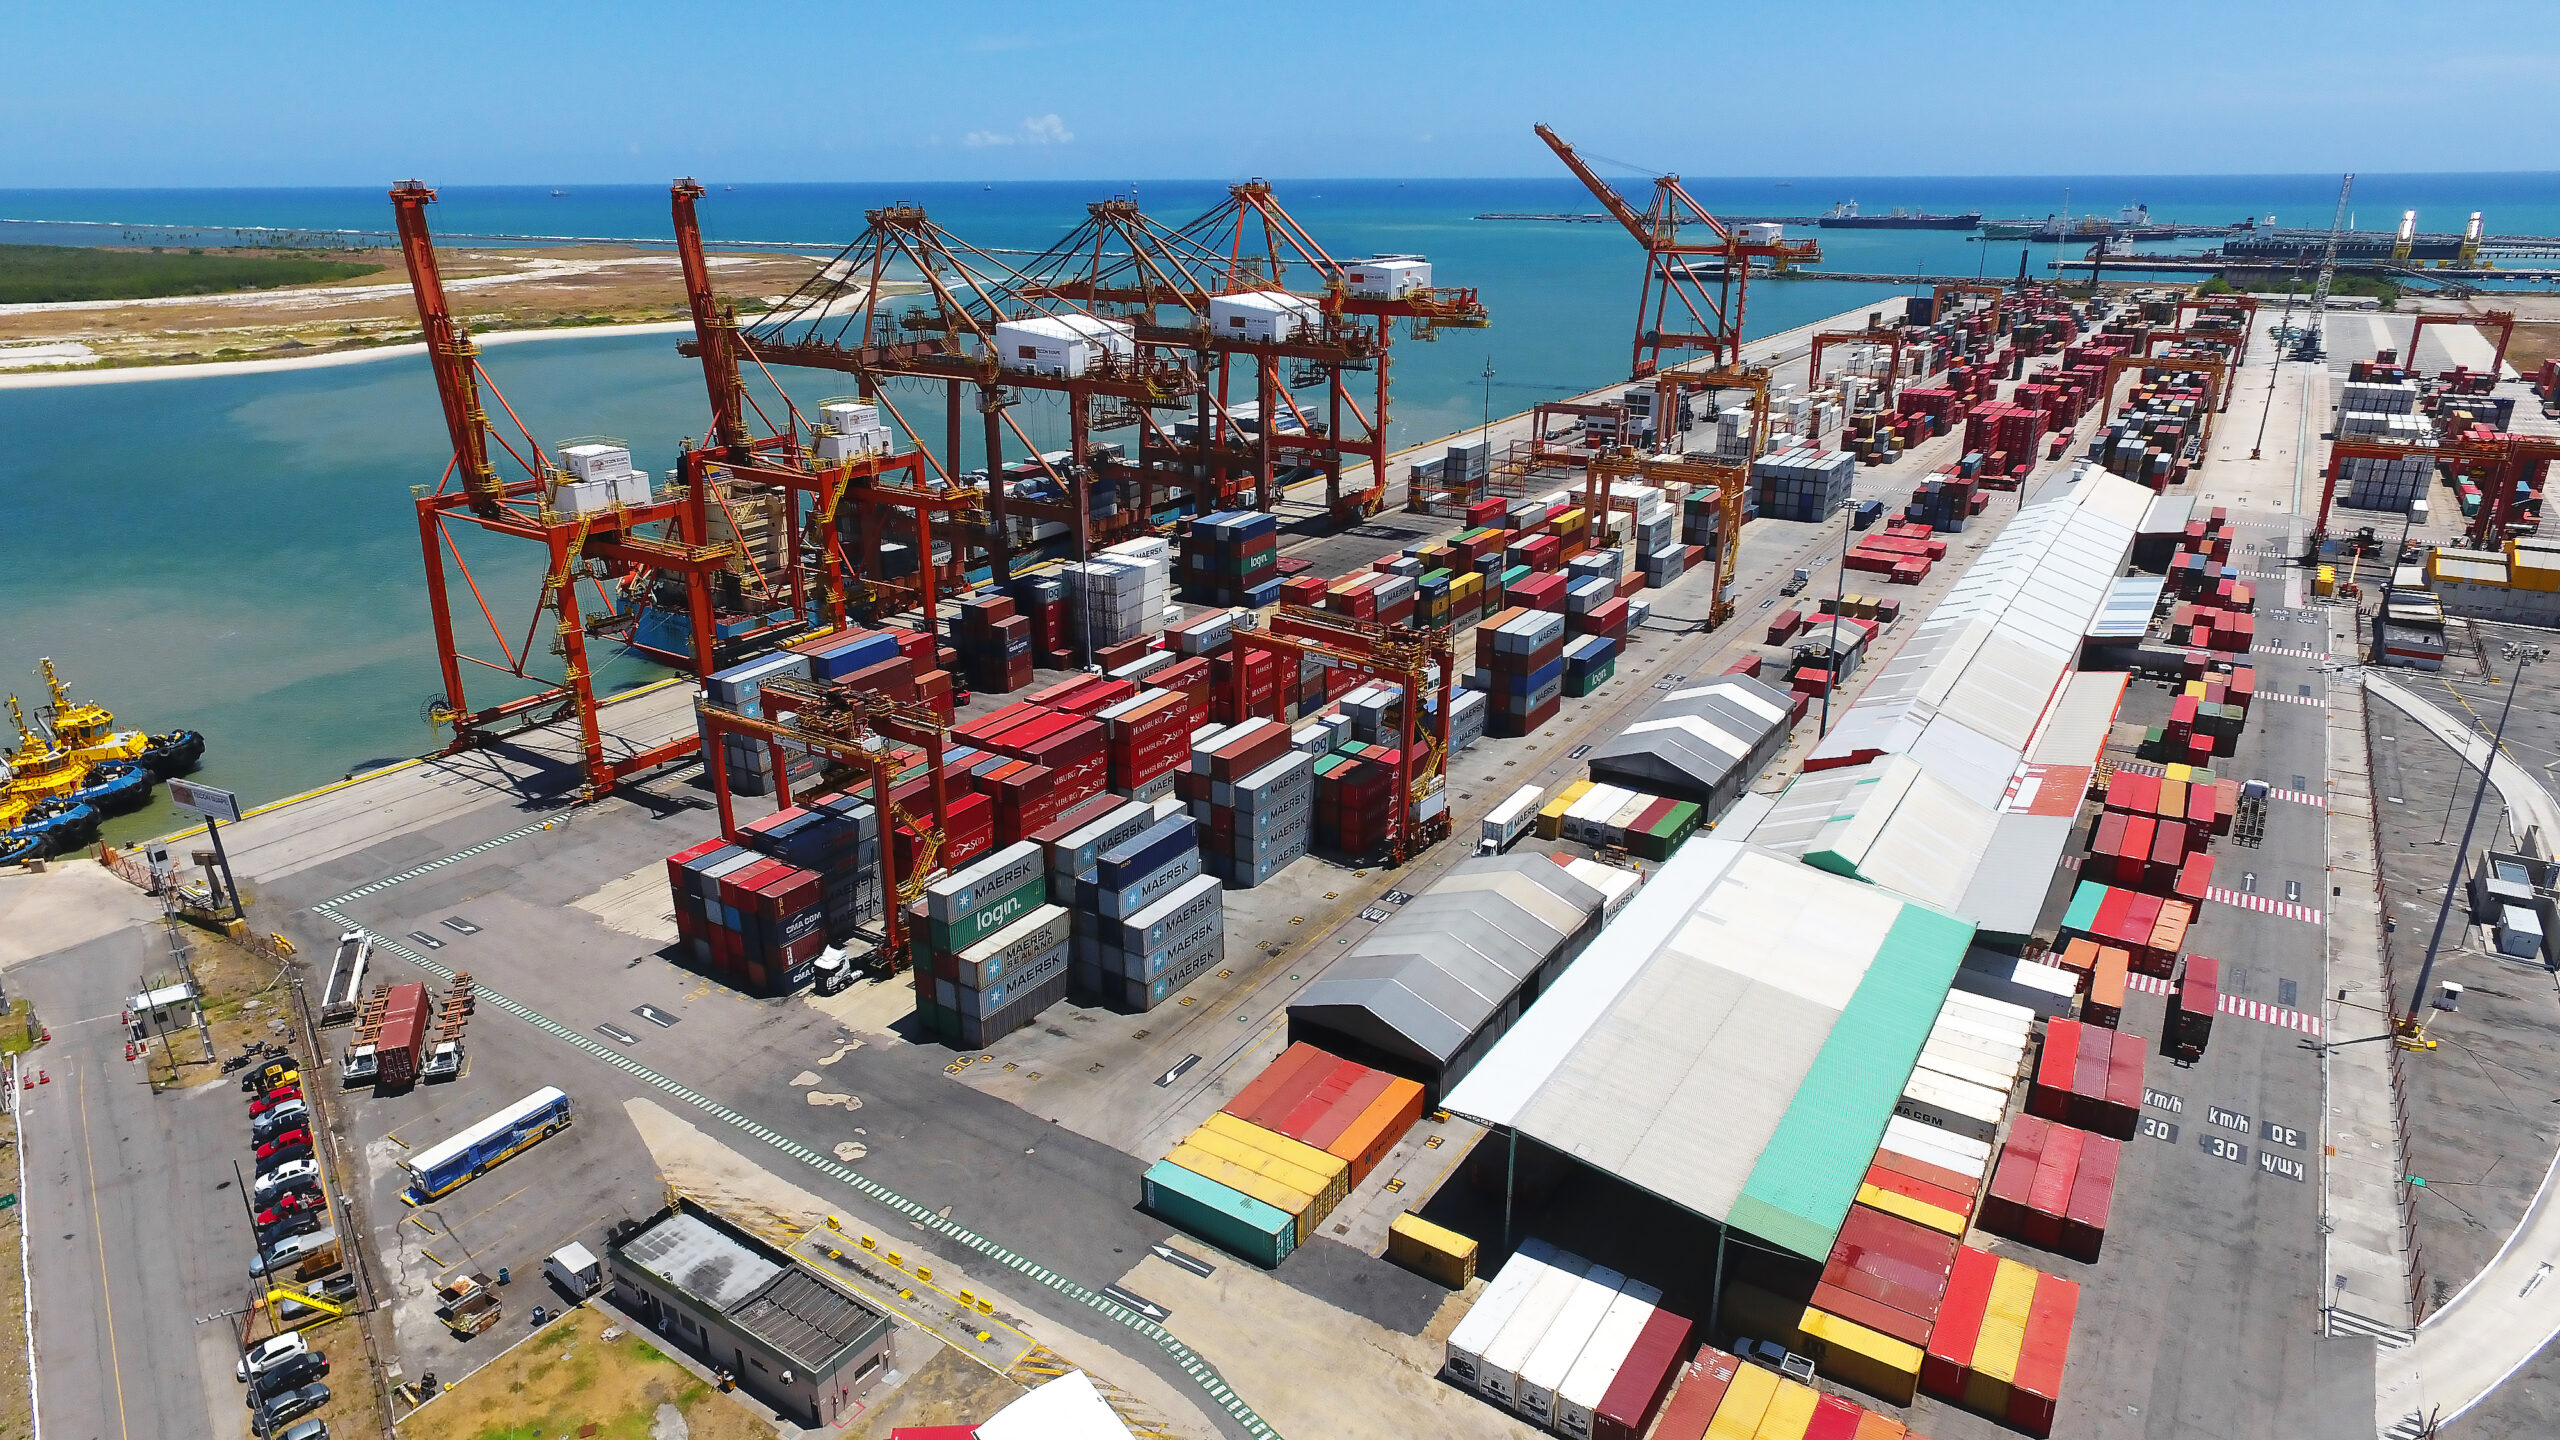 Auditoria do TCU retrata indícios de abusos no preço de portos brasileiros